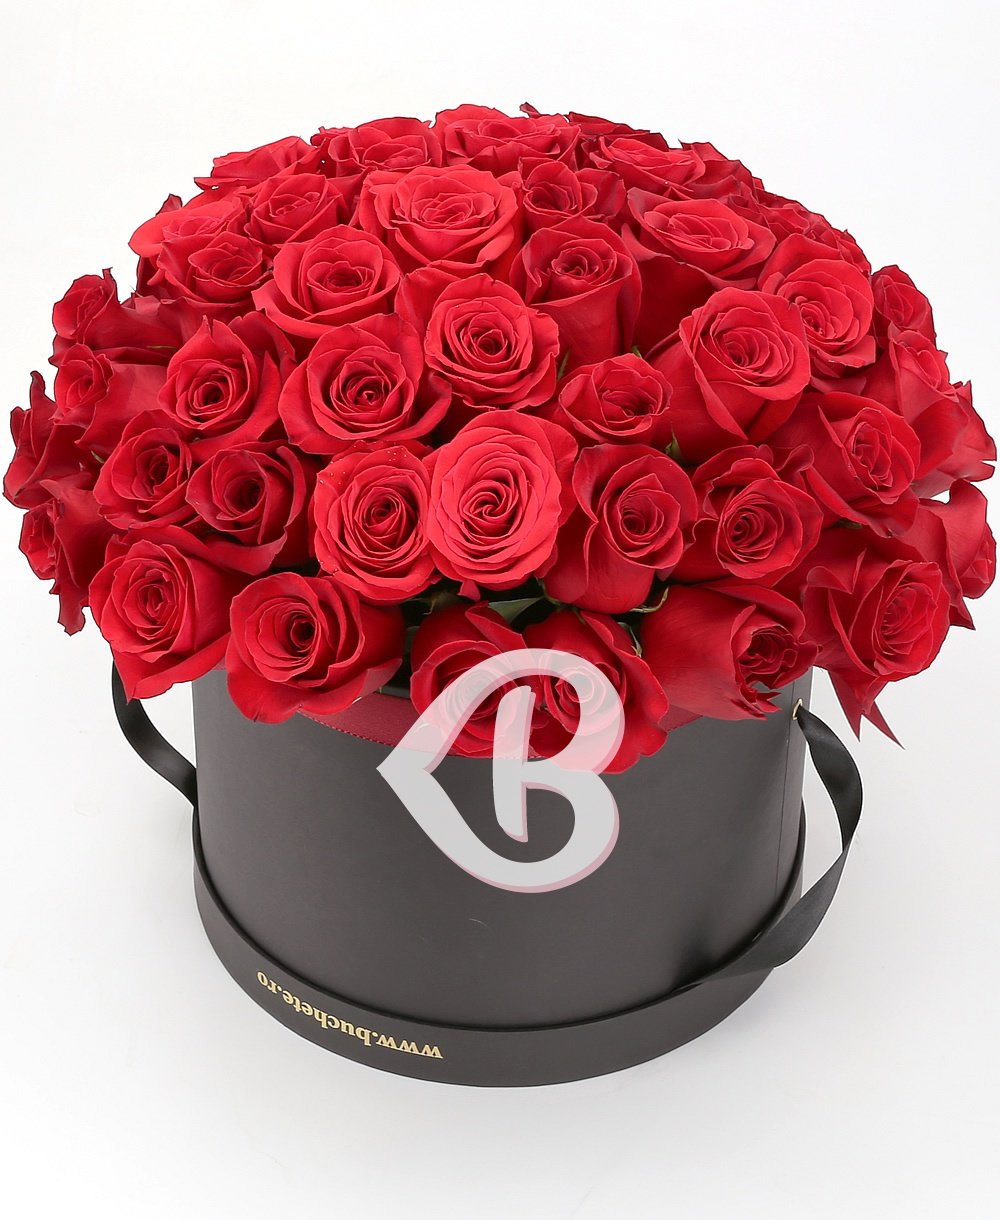 Imaginea produsului 57 Trandafiri Roșii în Cutie